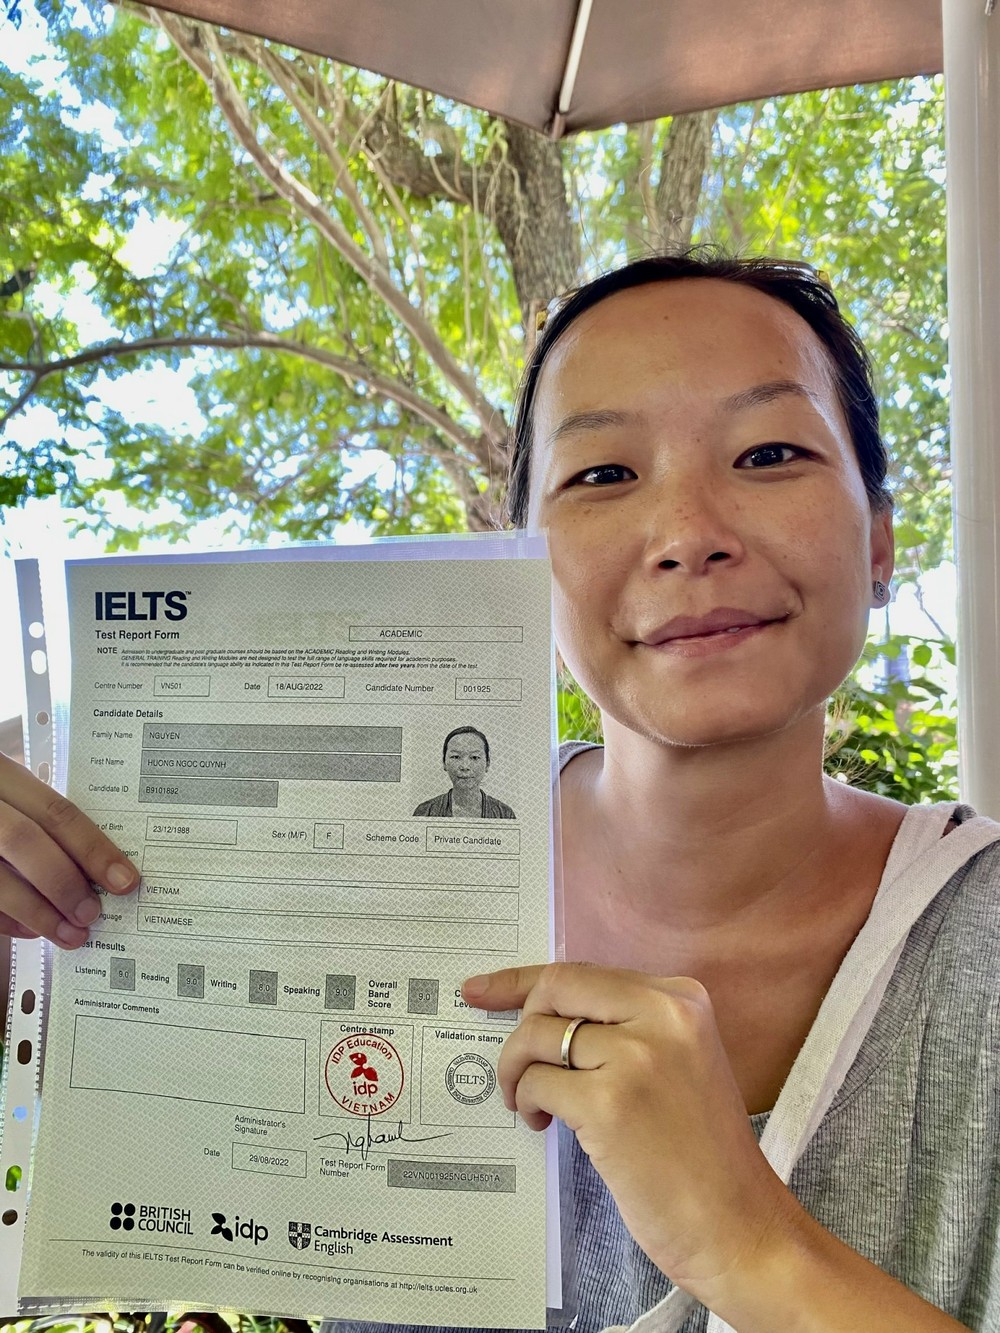 Ngọc Quỳnh - cô gái thứ 6 ở Việt Nam đạt 9.0 IELTS: Gia đình cho mình cảm giác an toàn để vươn xa! - Ảnh 1.